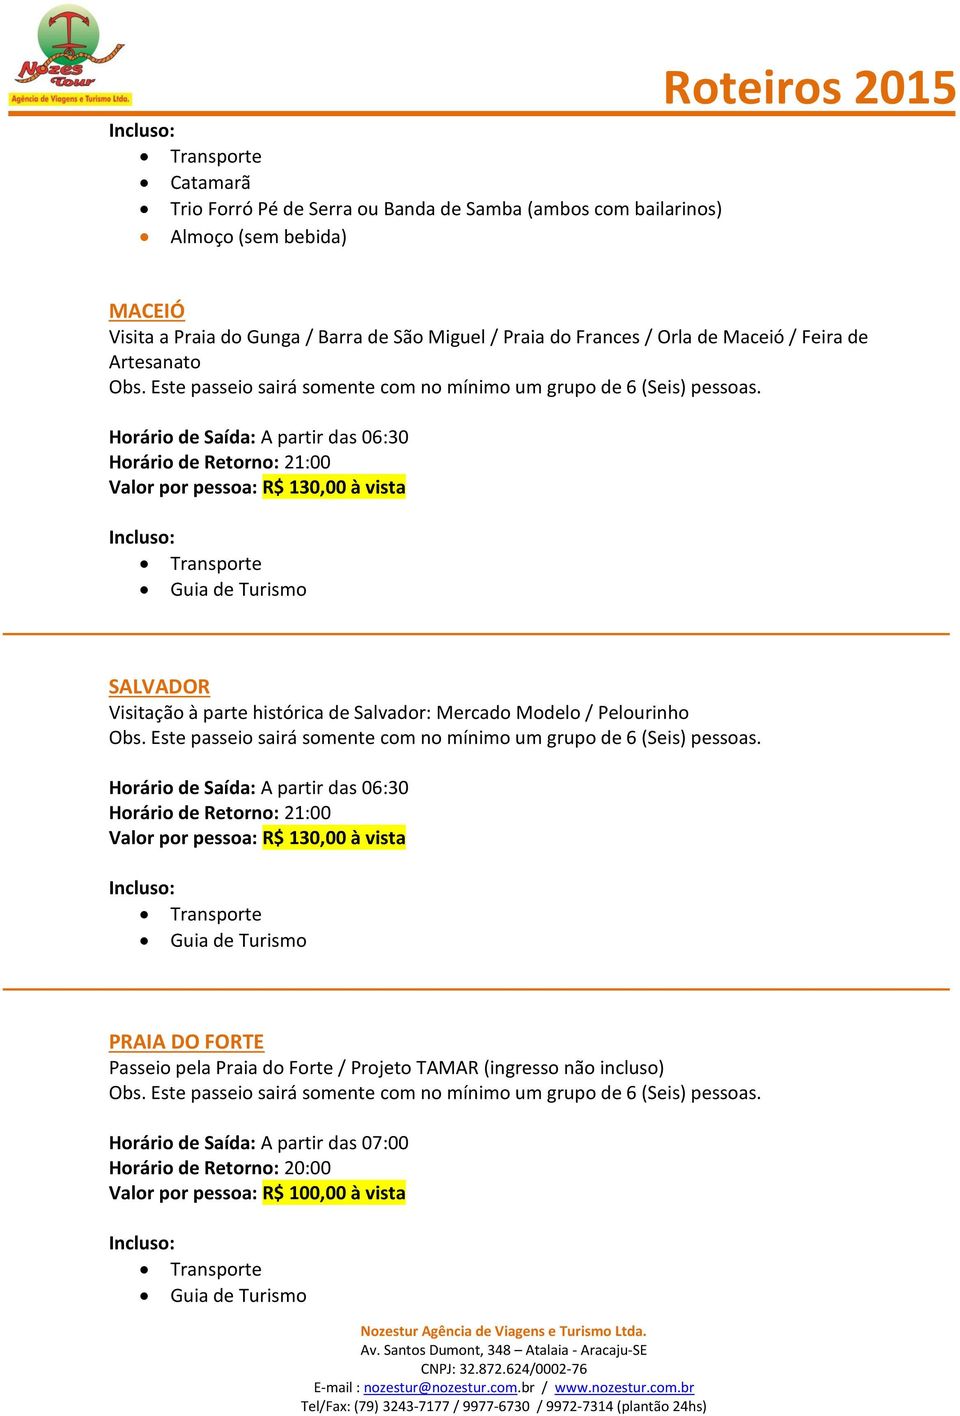 à parte histórica de Salvador: Mercado Modelo / Pelourinho Horário de Saída: A partir das 06:30 Horário de Retorno: 21:00 Valor por pessoa: R$ 130,00 à vista PRAIA DO